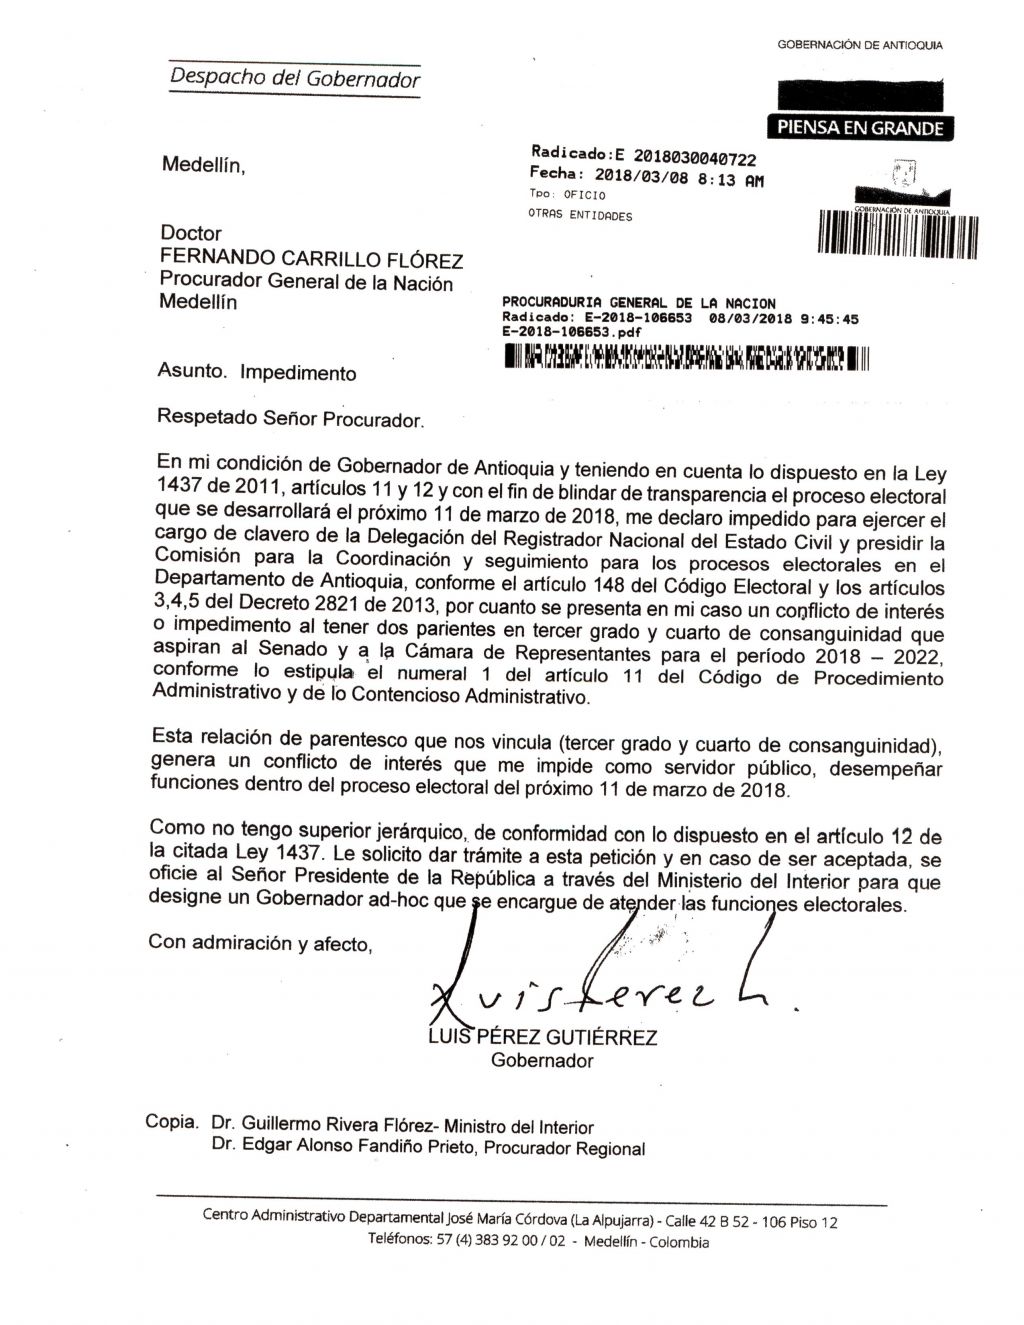 Gobernador de Antioquia declara en carta al Procurador General de la Nación, impedimentos para las elecciones del 11 de marzo de 2018